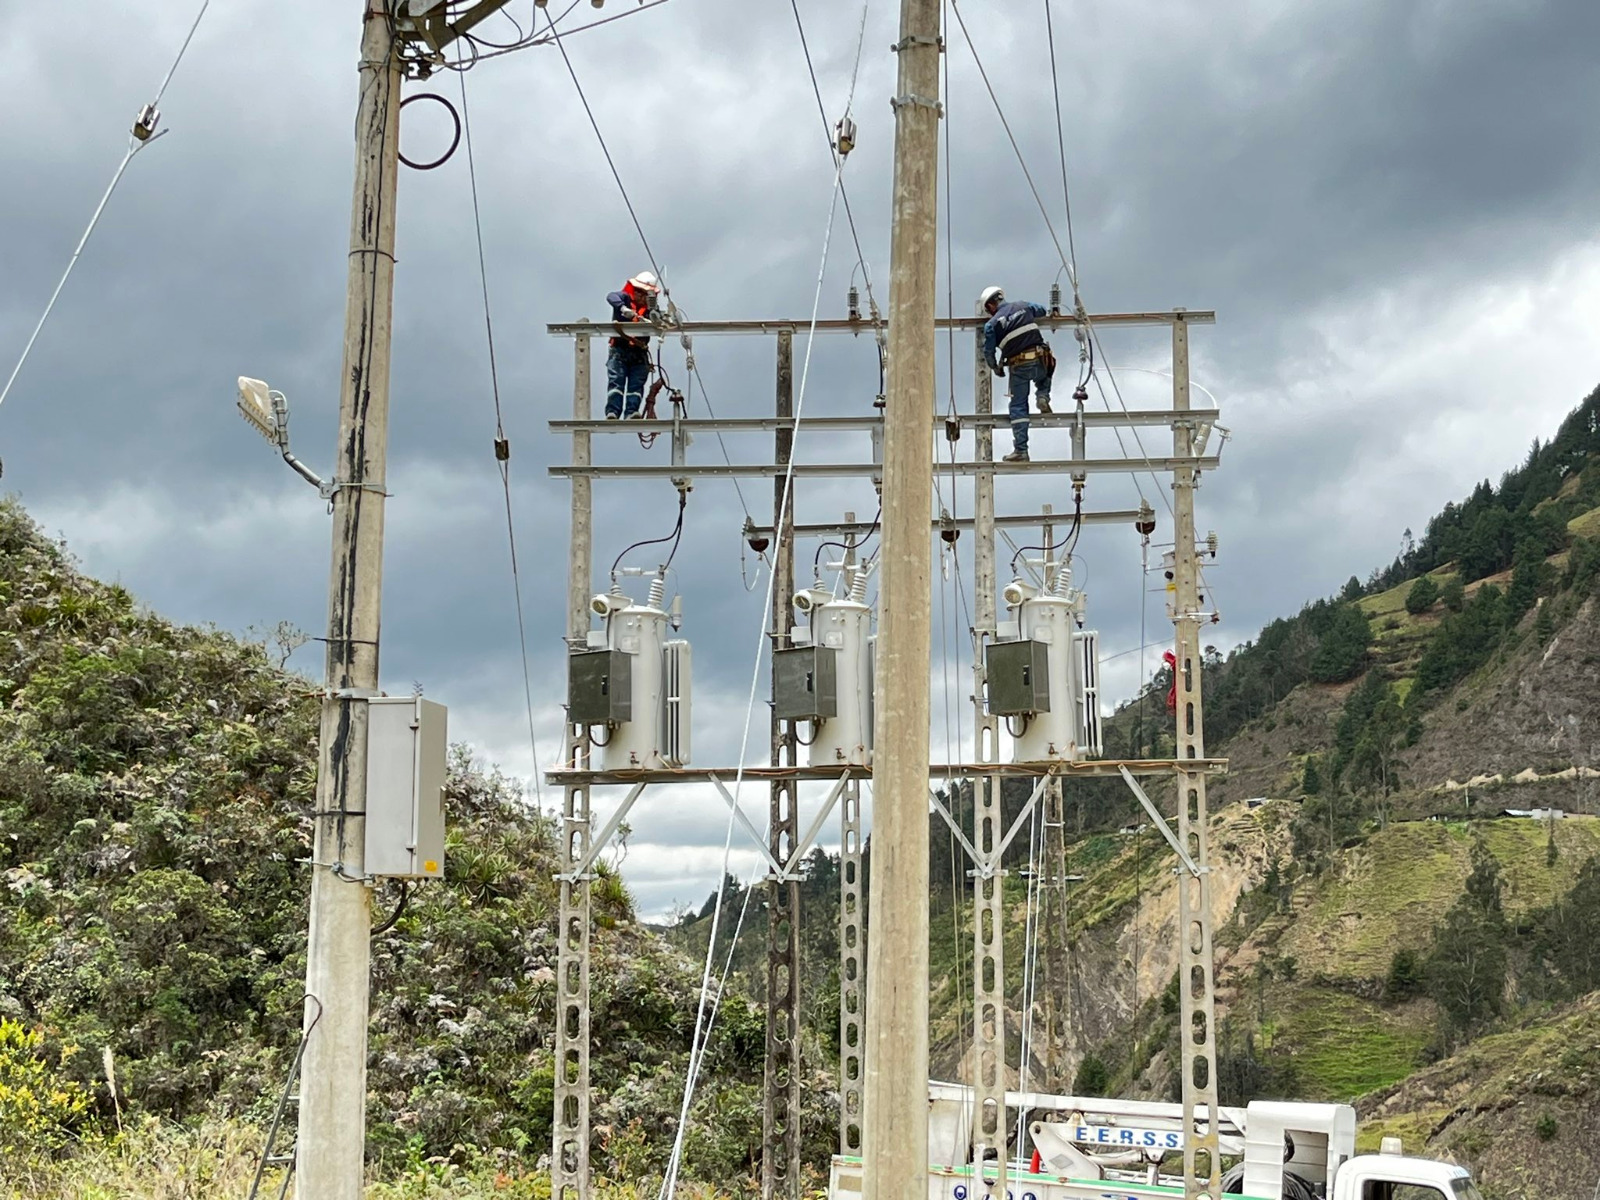 IMPLEMENTACIÓN. Banco reguladores para mejorar el servicio eléctrico en Saraguro.